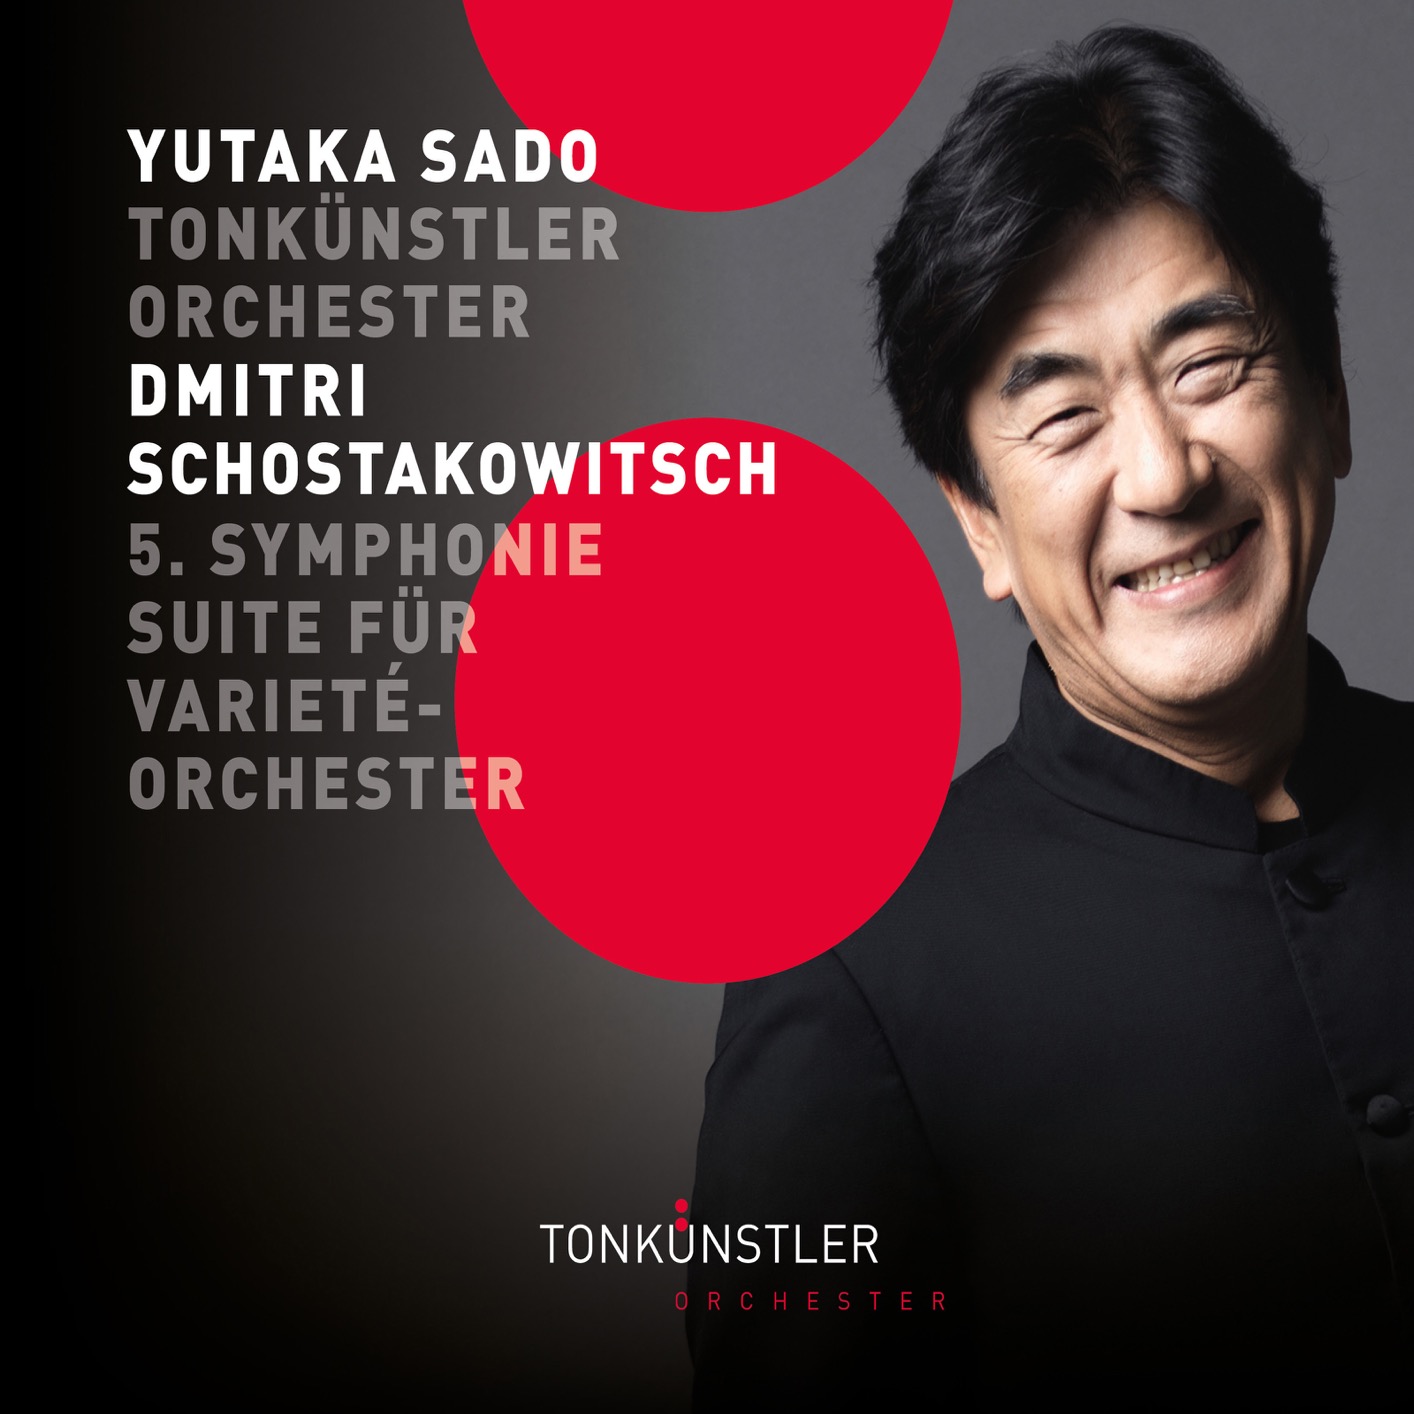 Tonkunstler Orchester & Yutaka Sado - Shostakovich: Symphony No. 5 & Suite for Variety Orchestra (2018) [FLAC 24bit/192kHz]